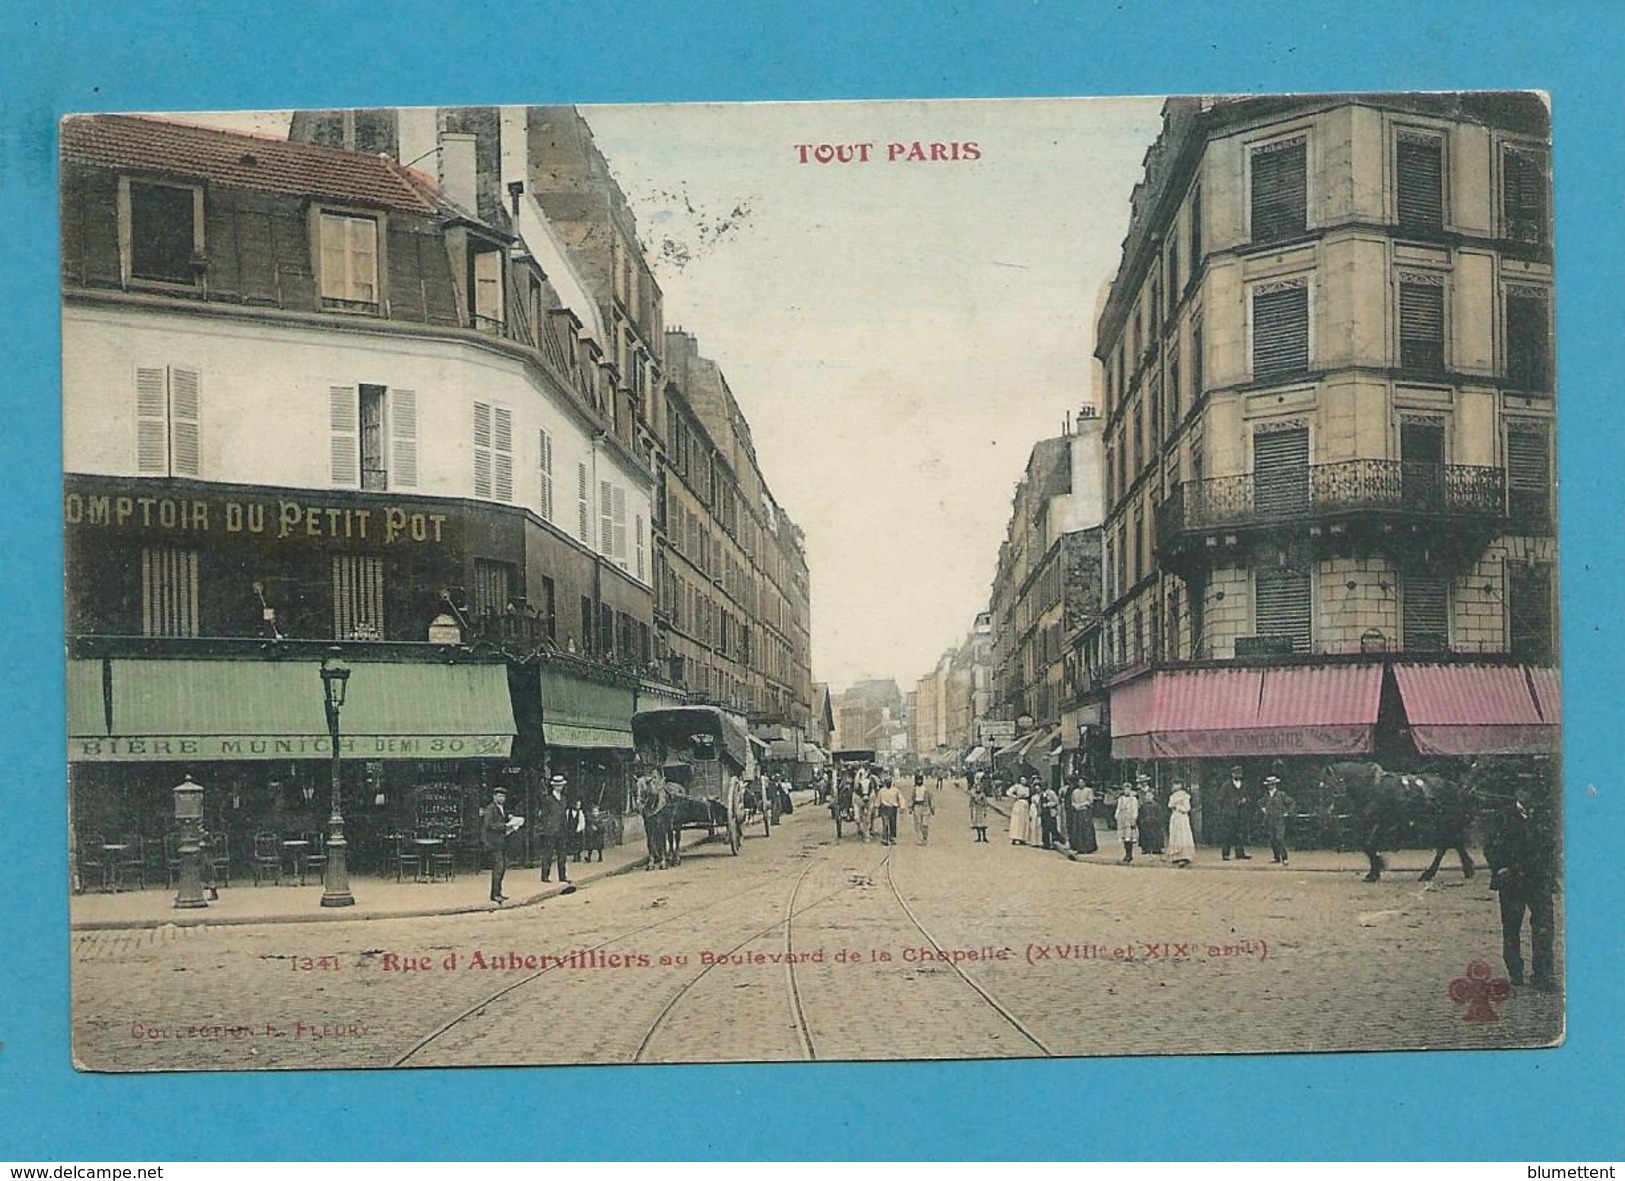 CPA TOUT PARIS 1341 - Rue D'Aubervilliers (XVIIIème Arrt.) Ed. FLEURY - Arrondissement: 18